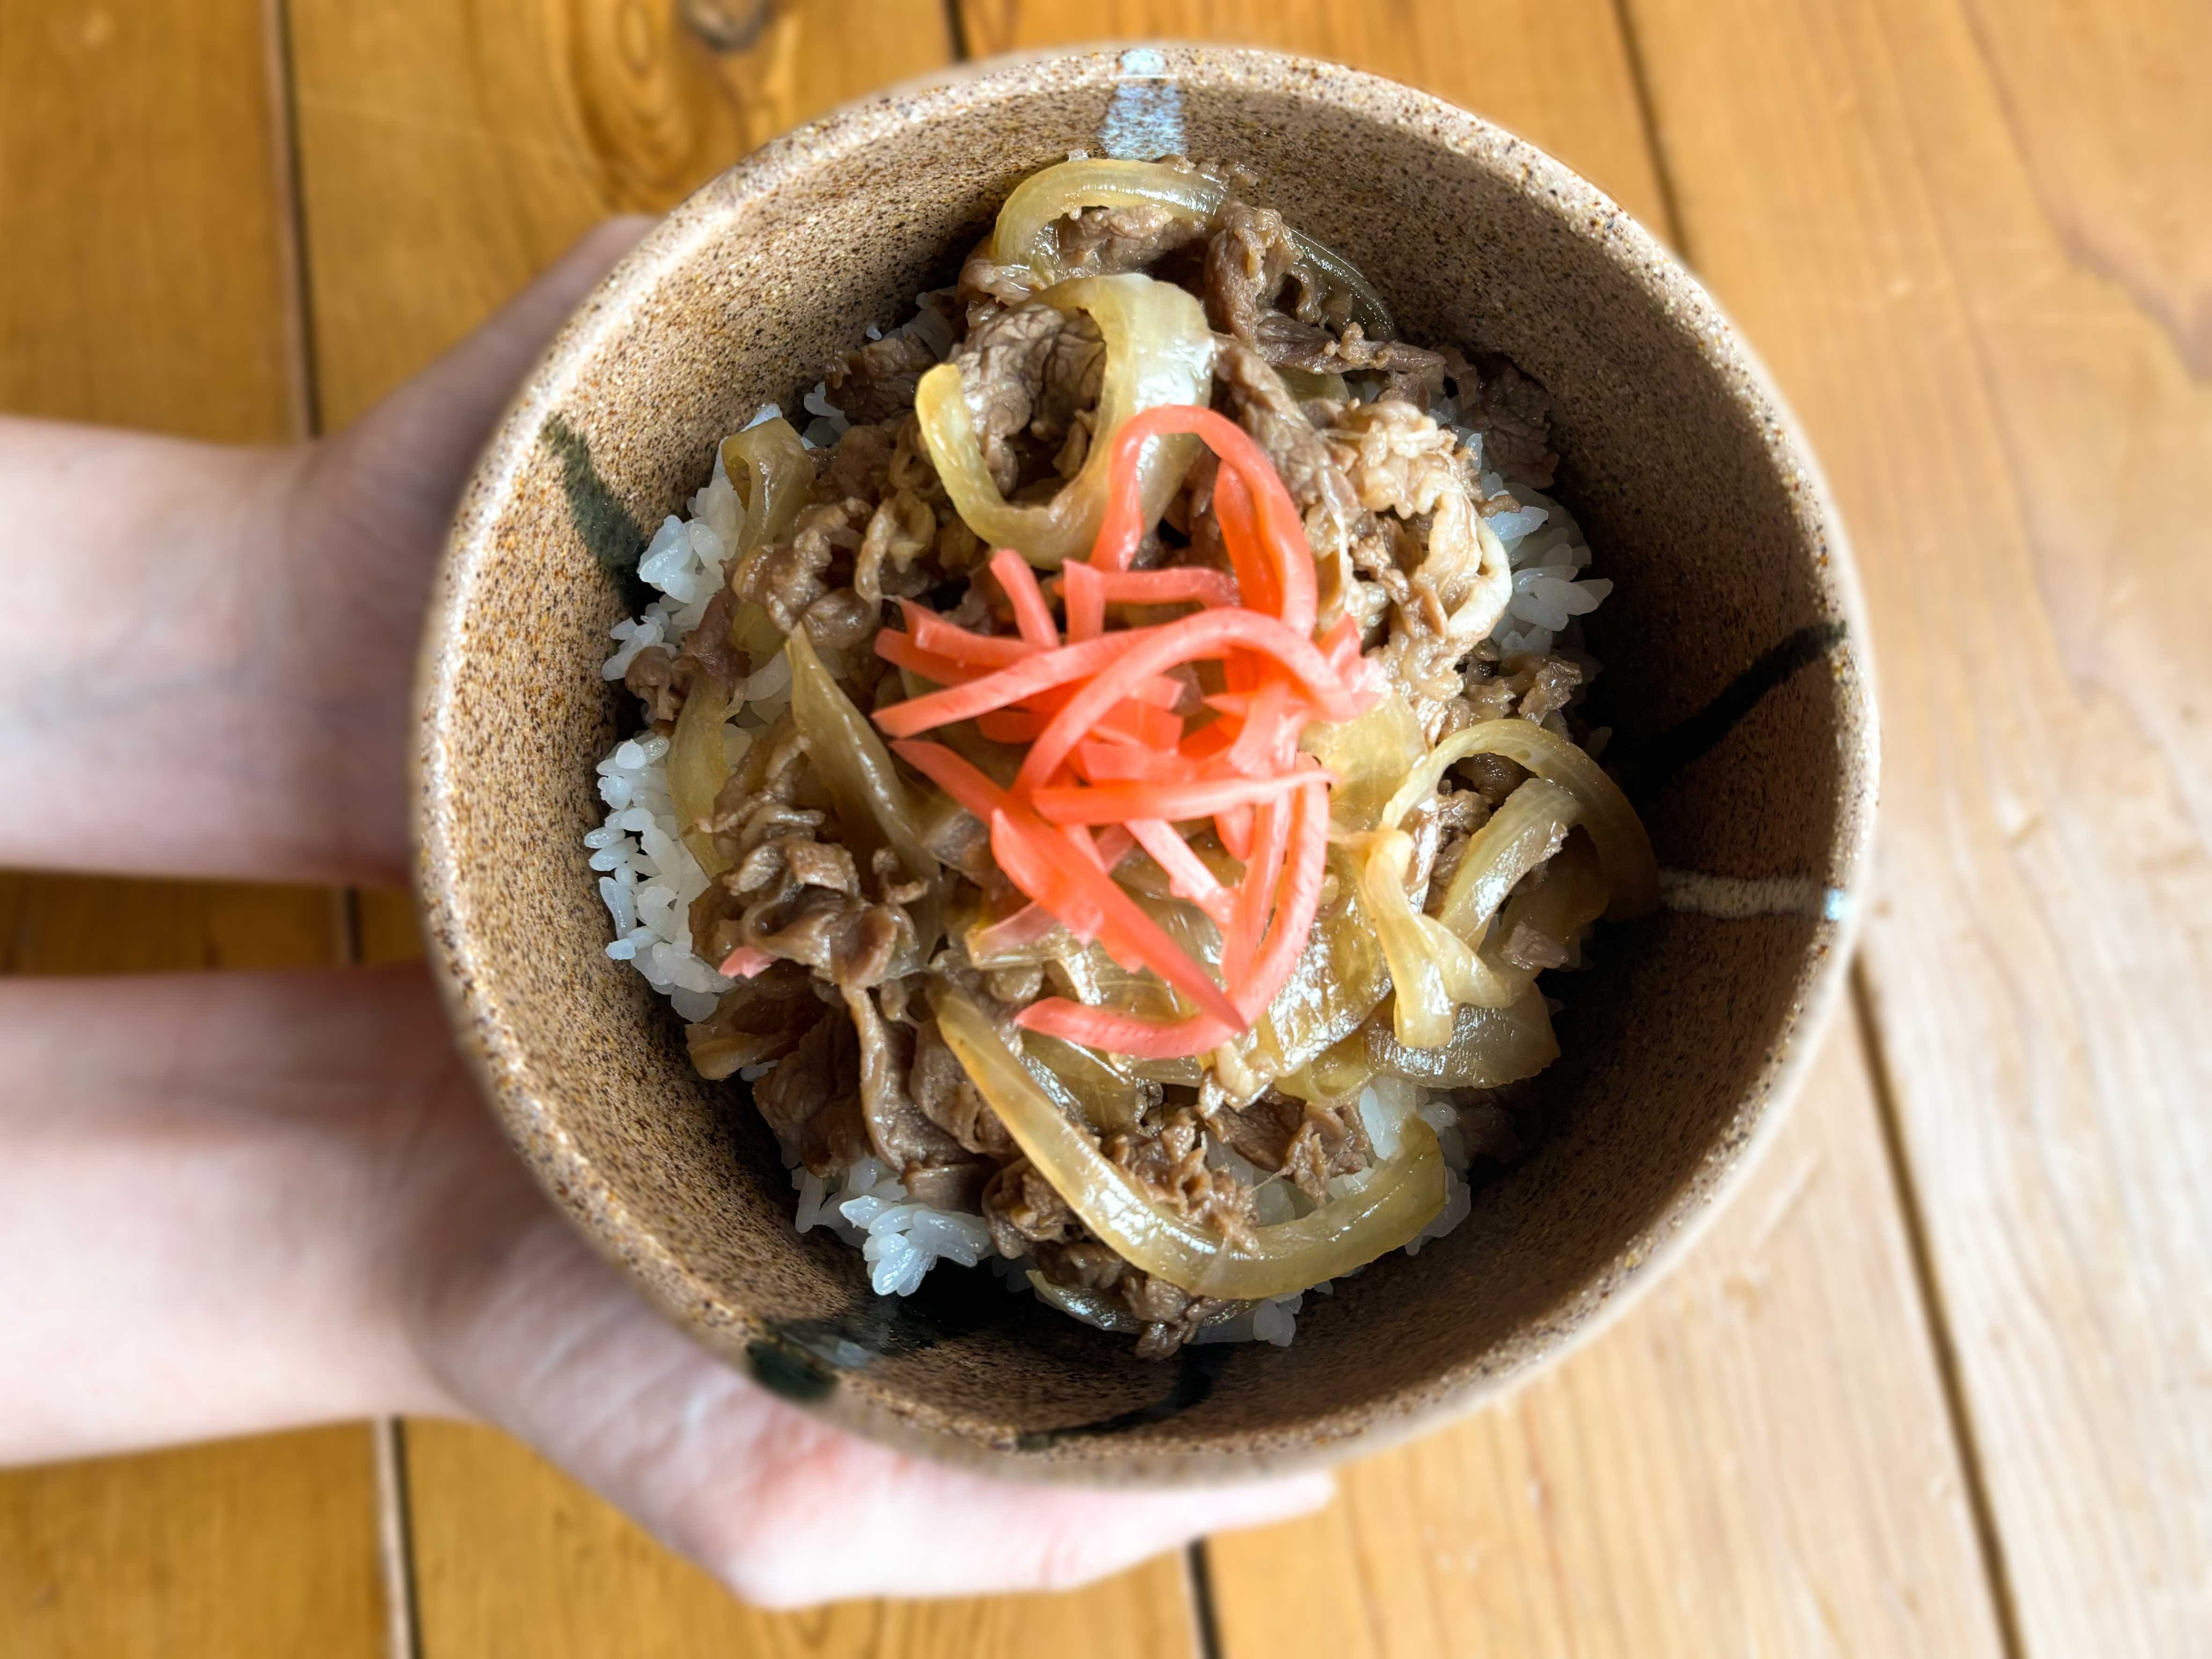 The ubiquitous Japanese beef rice bowlGyudon with side dishe